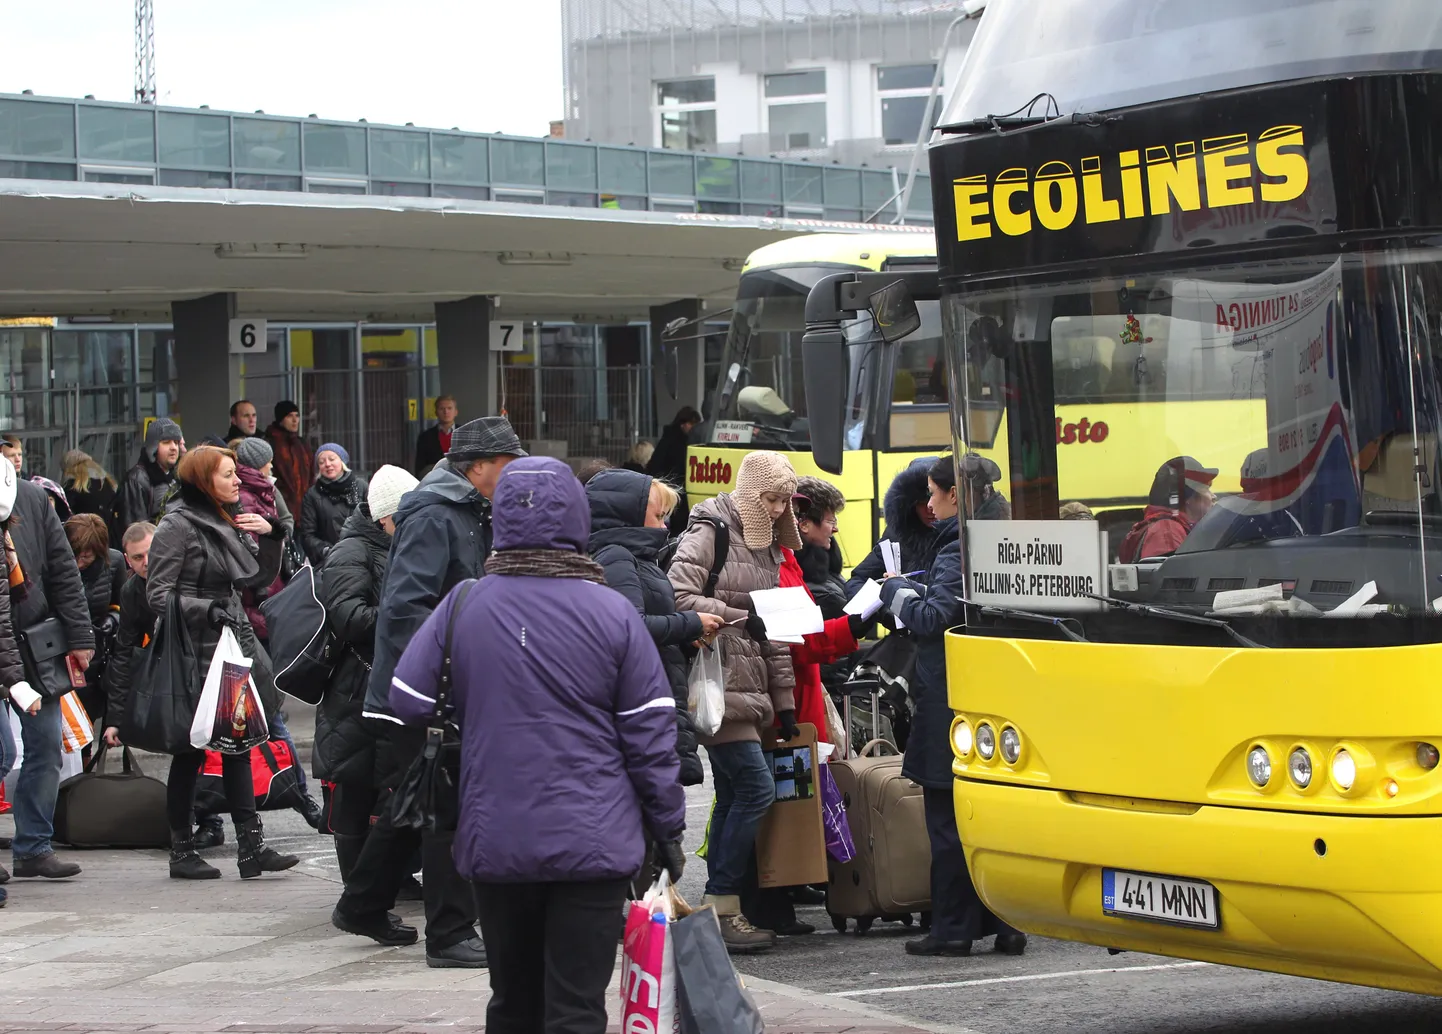 Hilinenud Ecolines'i buss Tallinna bussijaamast reisijaid peale võtmas.